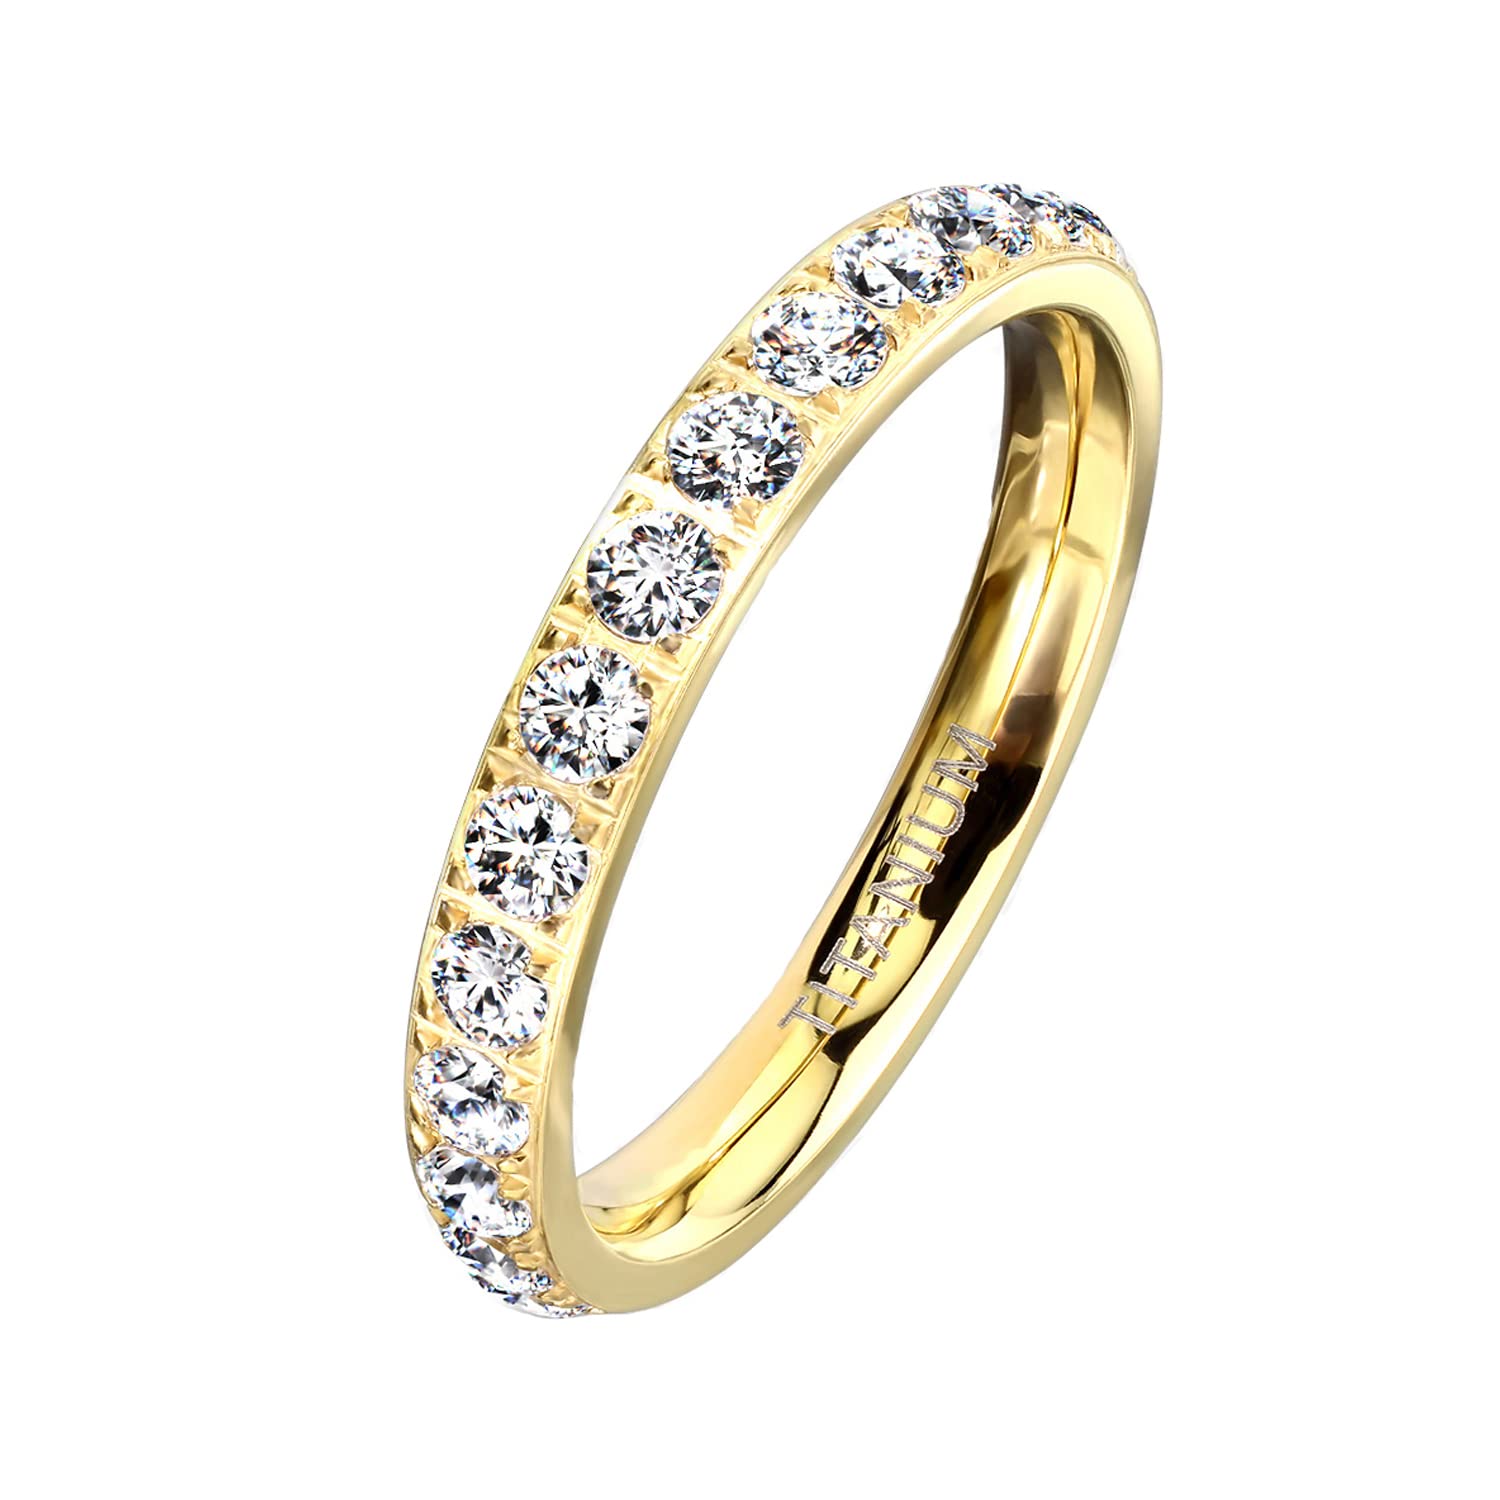 Mianova Damen Ring Titan mit vielen Glitzer Kristallen Steinen Damenring Memory Band Bandring Ewigkeitsring Trauring Verlobungsring Fingerring Gold Größe 51 (16.2)